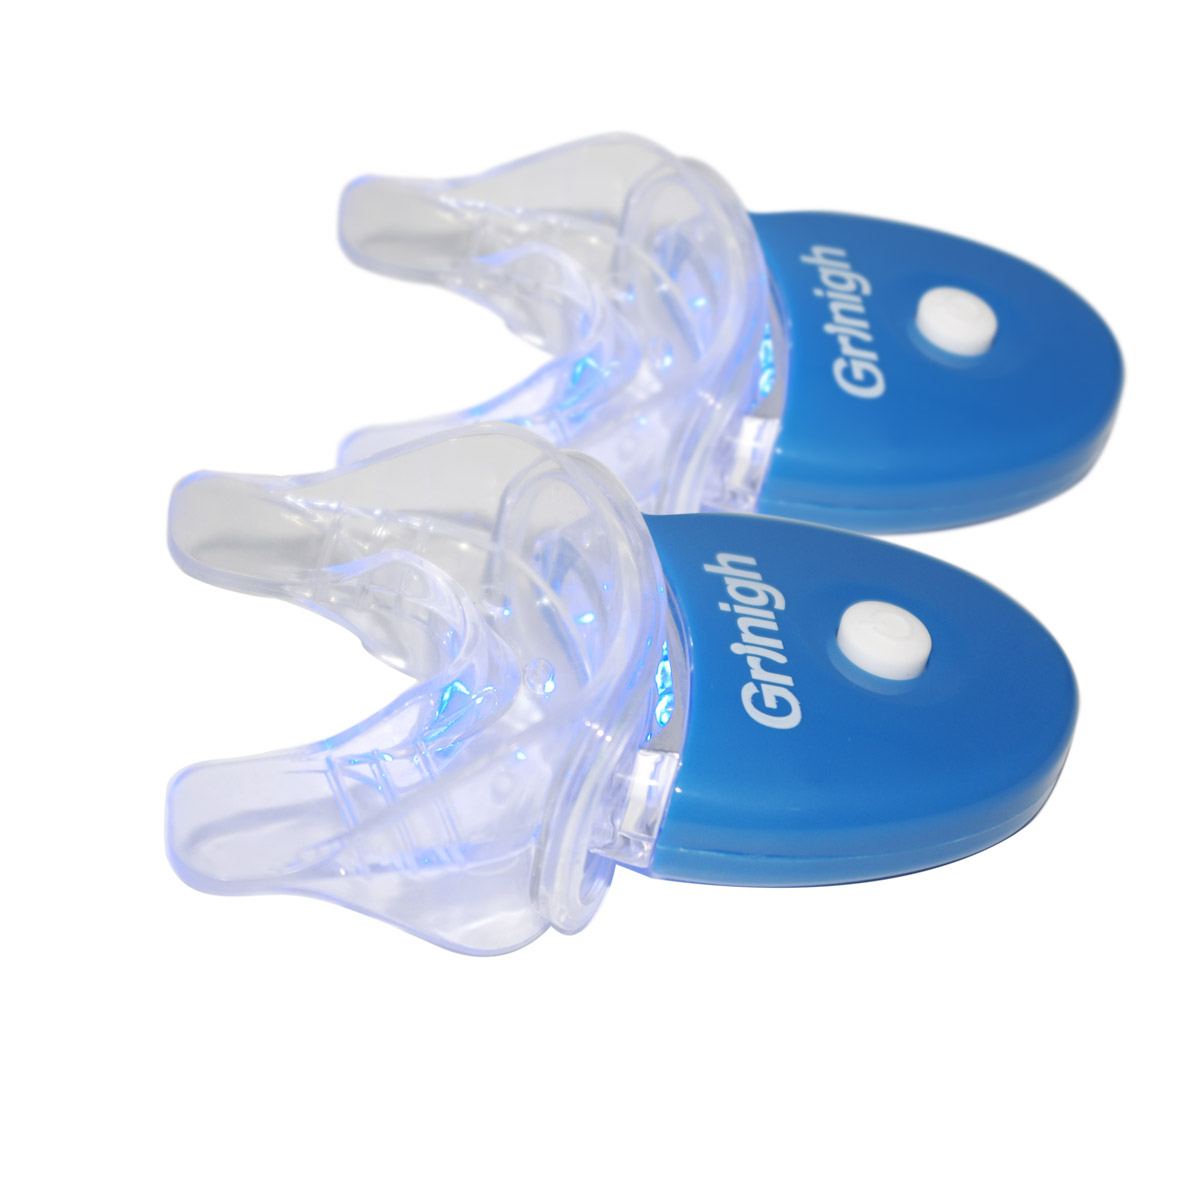 Grin365 2 Наборы мини-стоматологический светодиодный белый свет и согласованный Mouth лоток для домашнего отбеливания зубов системы CE Approved